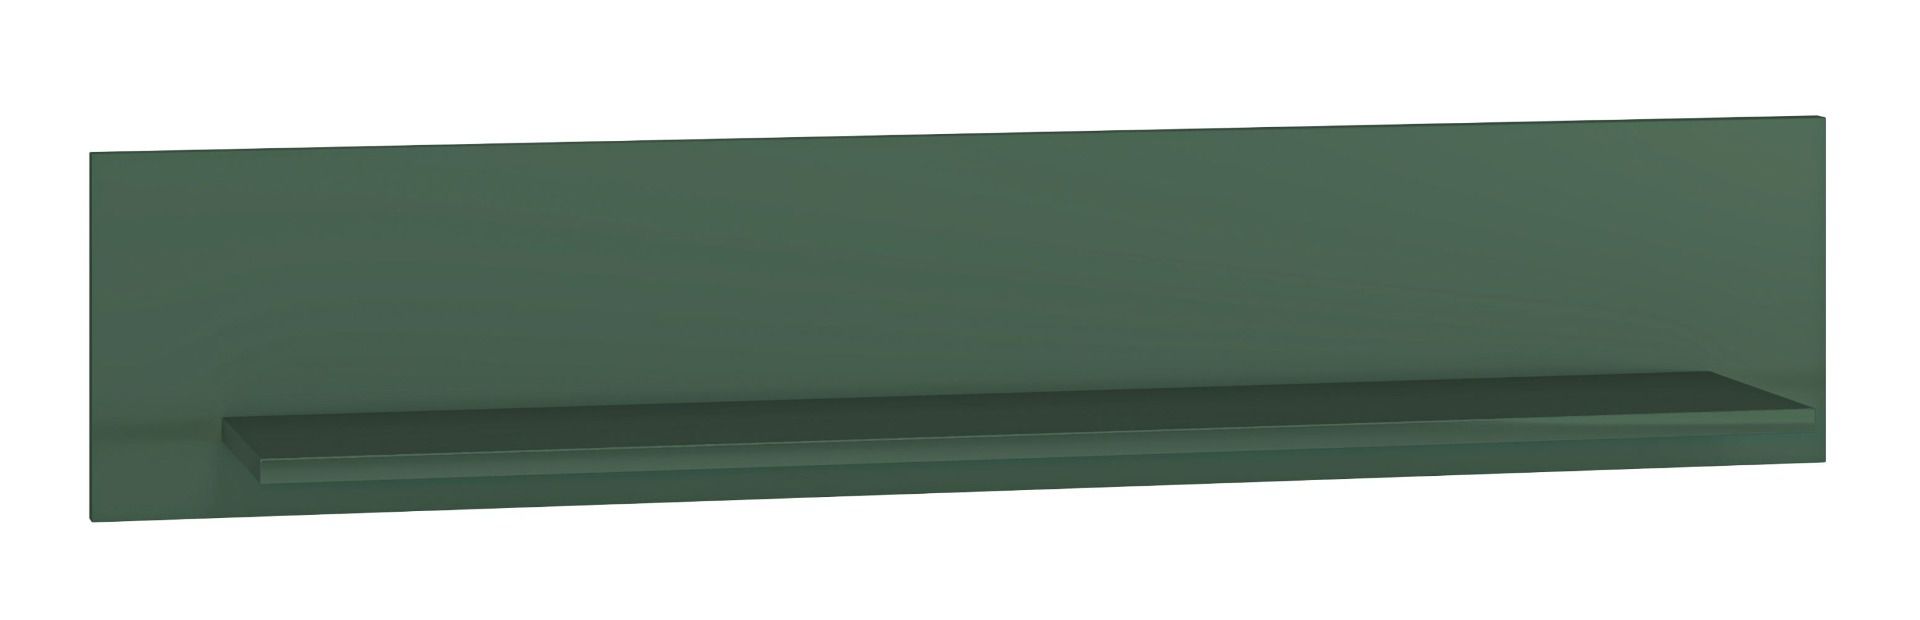 wandrek / hangplank Inari 08, kleur: Bosgroen - afmetingen: 23 x 120 x 22 cm (H x B x D)